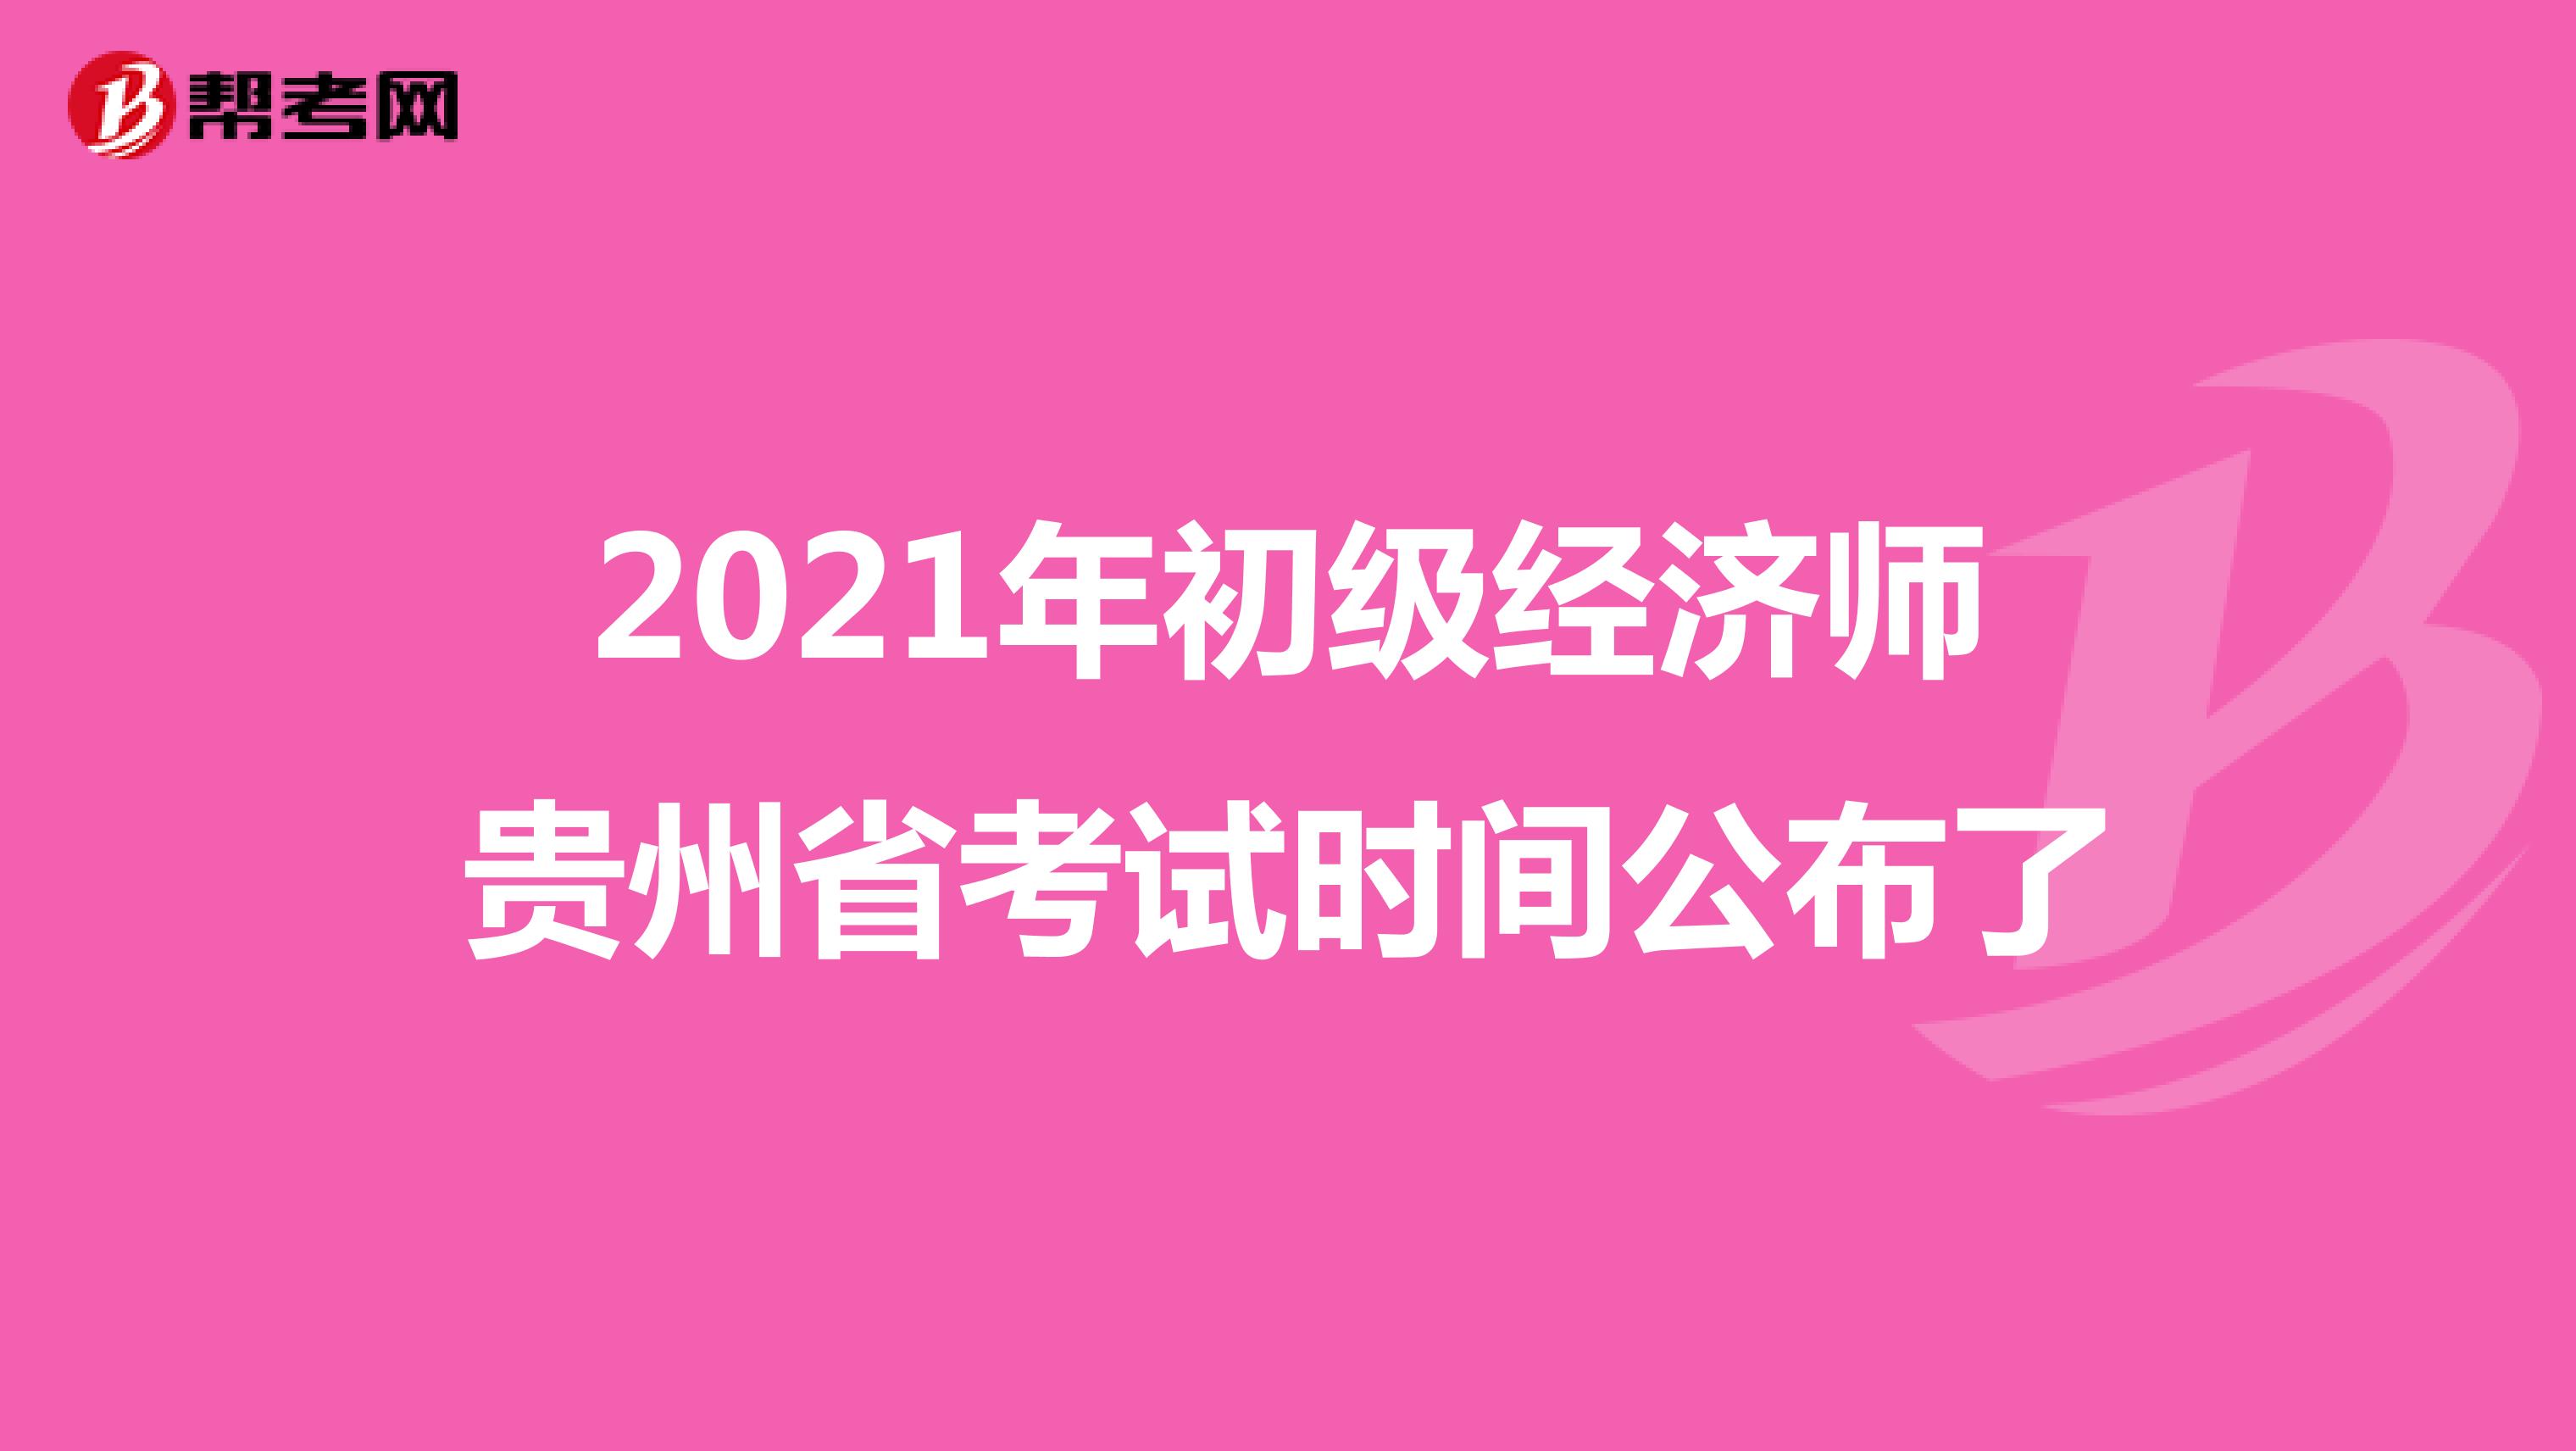 2021年初级经济师贵州省考试时间公布了